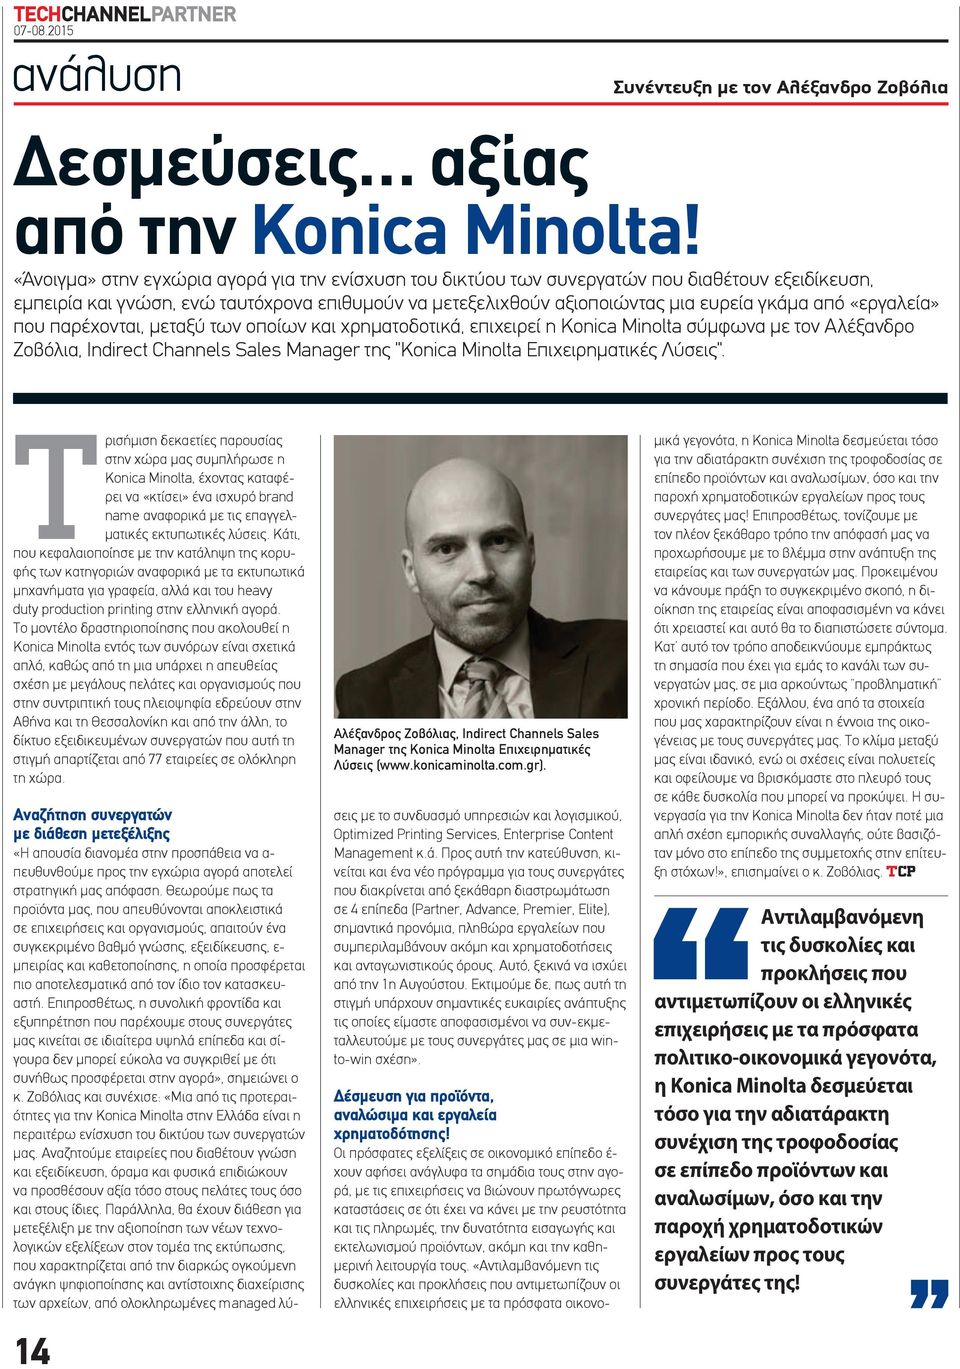 «εργαλεία» που παρέχονται, μεταξύ των οποίων και χρηματοδοτικά, επιχειρεί η Konica Minolta σύμφωνα με τον Αλέξανδρο Ζοβόλια, Indirect Channels Sales Manager της "Konica Minolta Επιχειρηματικές